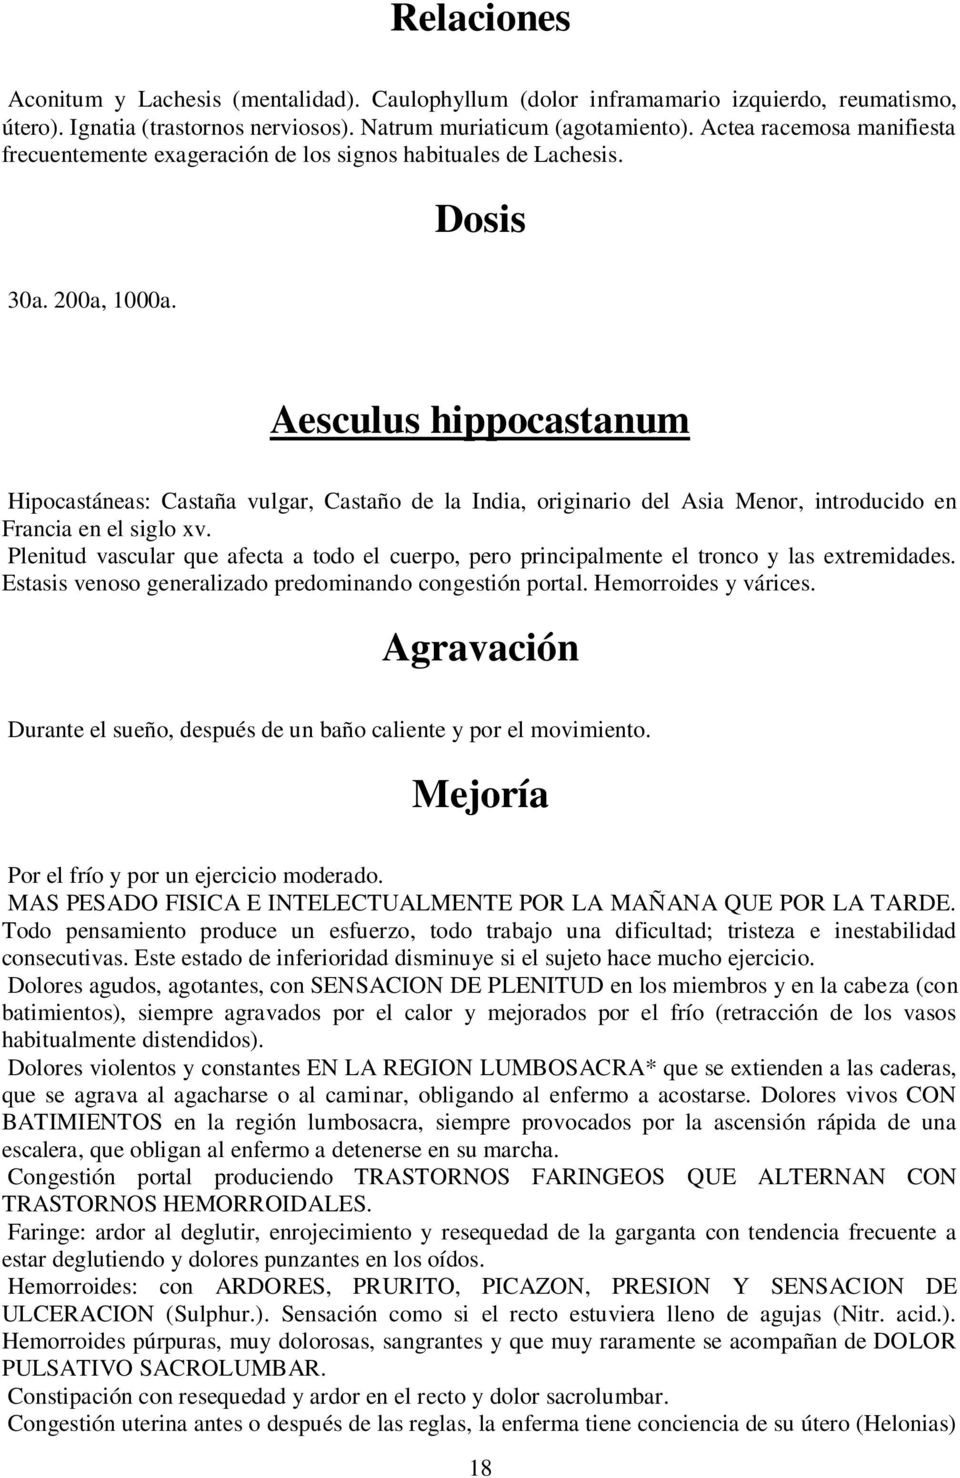 Aesculus hippocastanum Hipocastáneas: Castaña vulgar, Castaño de la India, originario del Asia Menor, introducido en Francia en el siglo xv.